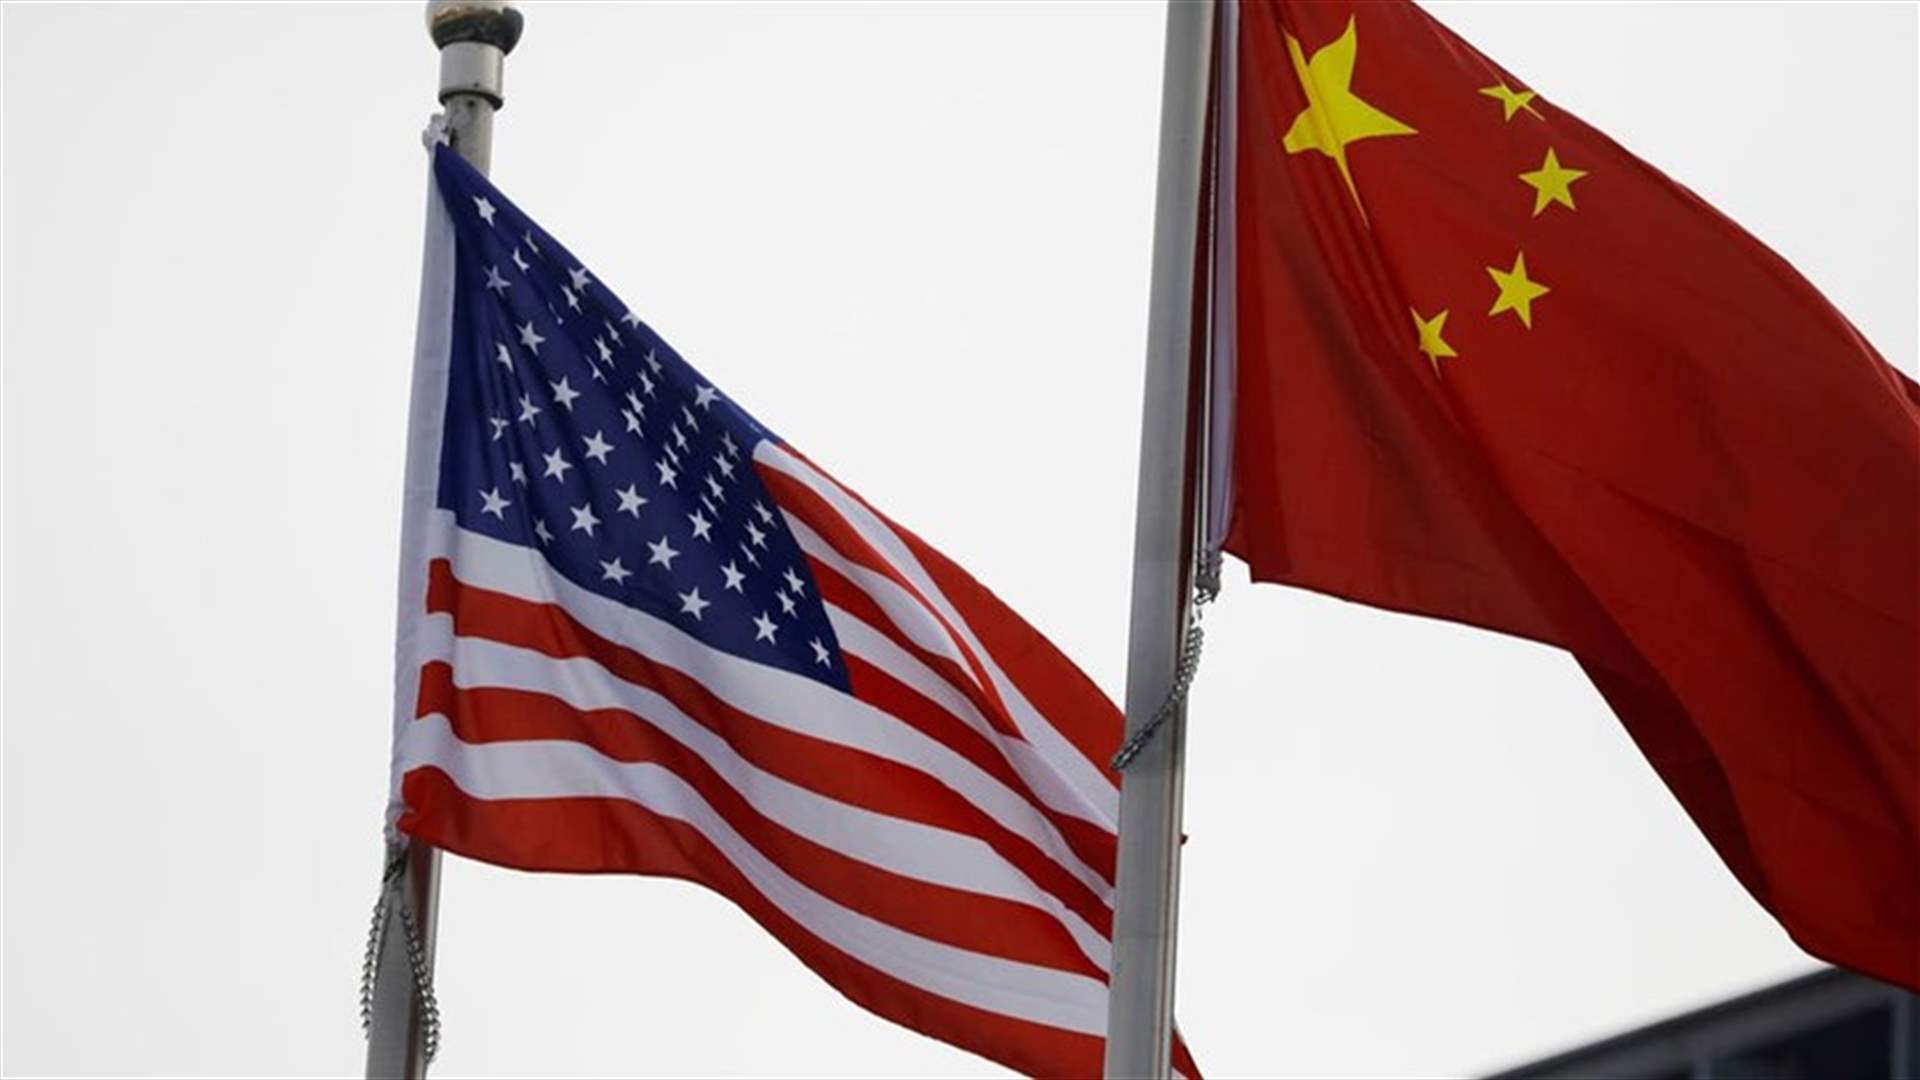 الخارجية الأميركية تعلن عن أول زيارة لمسؤول أميركي إلى الصين منذ إلغاء زيارة بلينكن